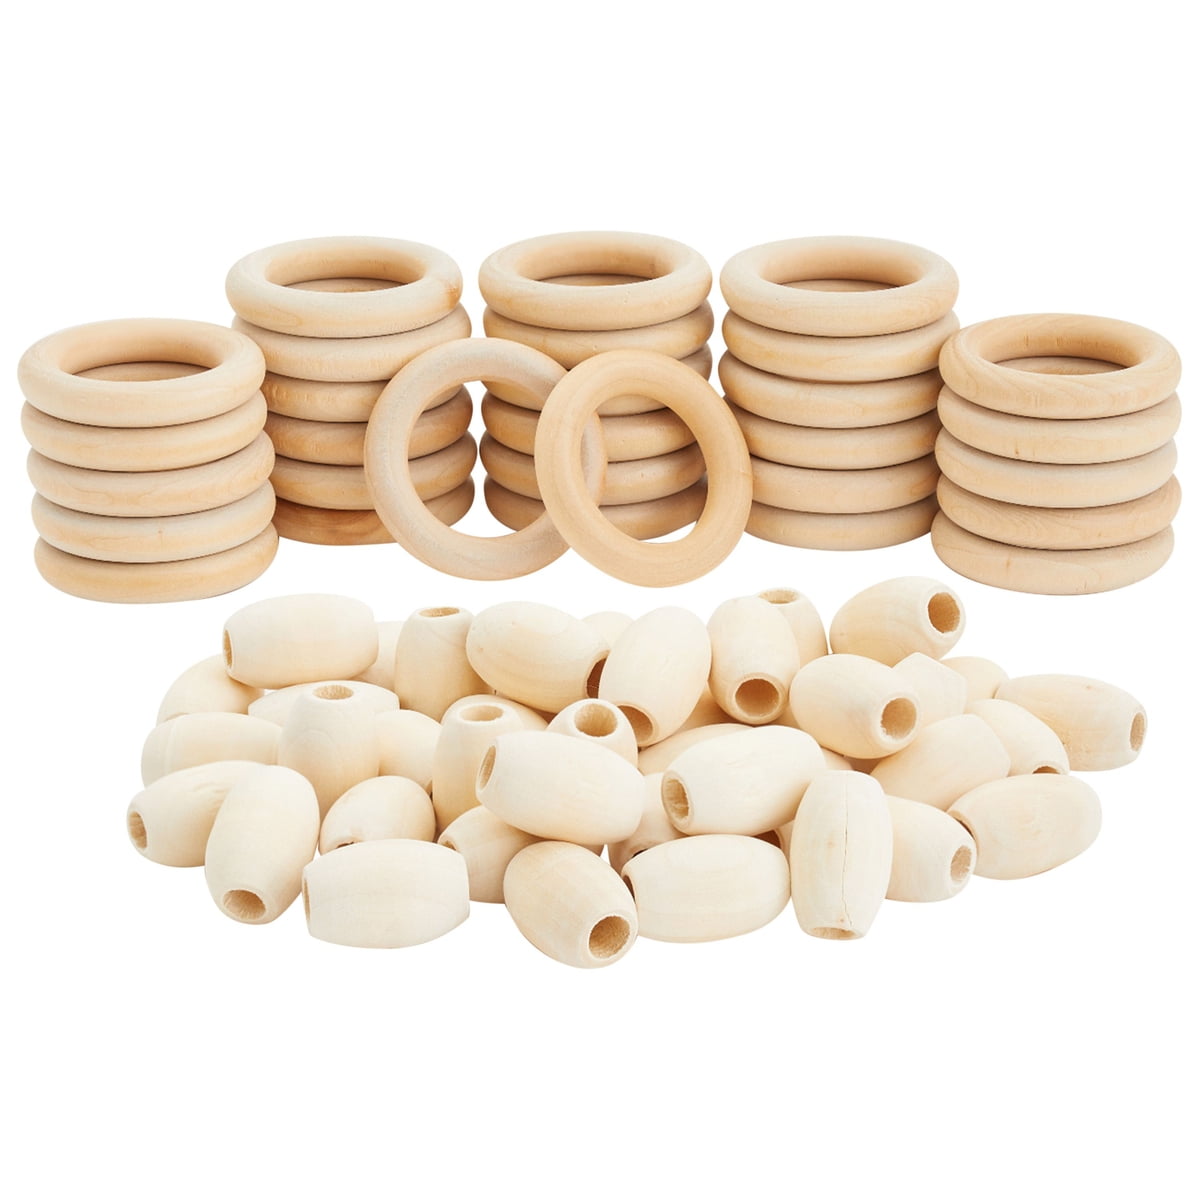 maak het plat Leeuw Voorzichtigheid 80 Pcs Unfinished Oval Wood Beads and Round Wooden Rings for Macrame  Supplies, DIY Crafts - Walmart.com